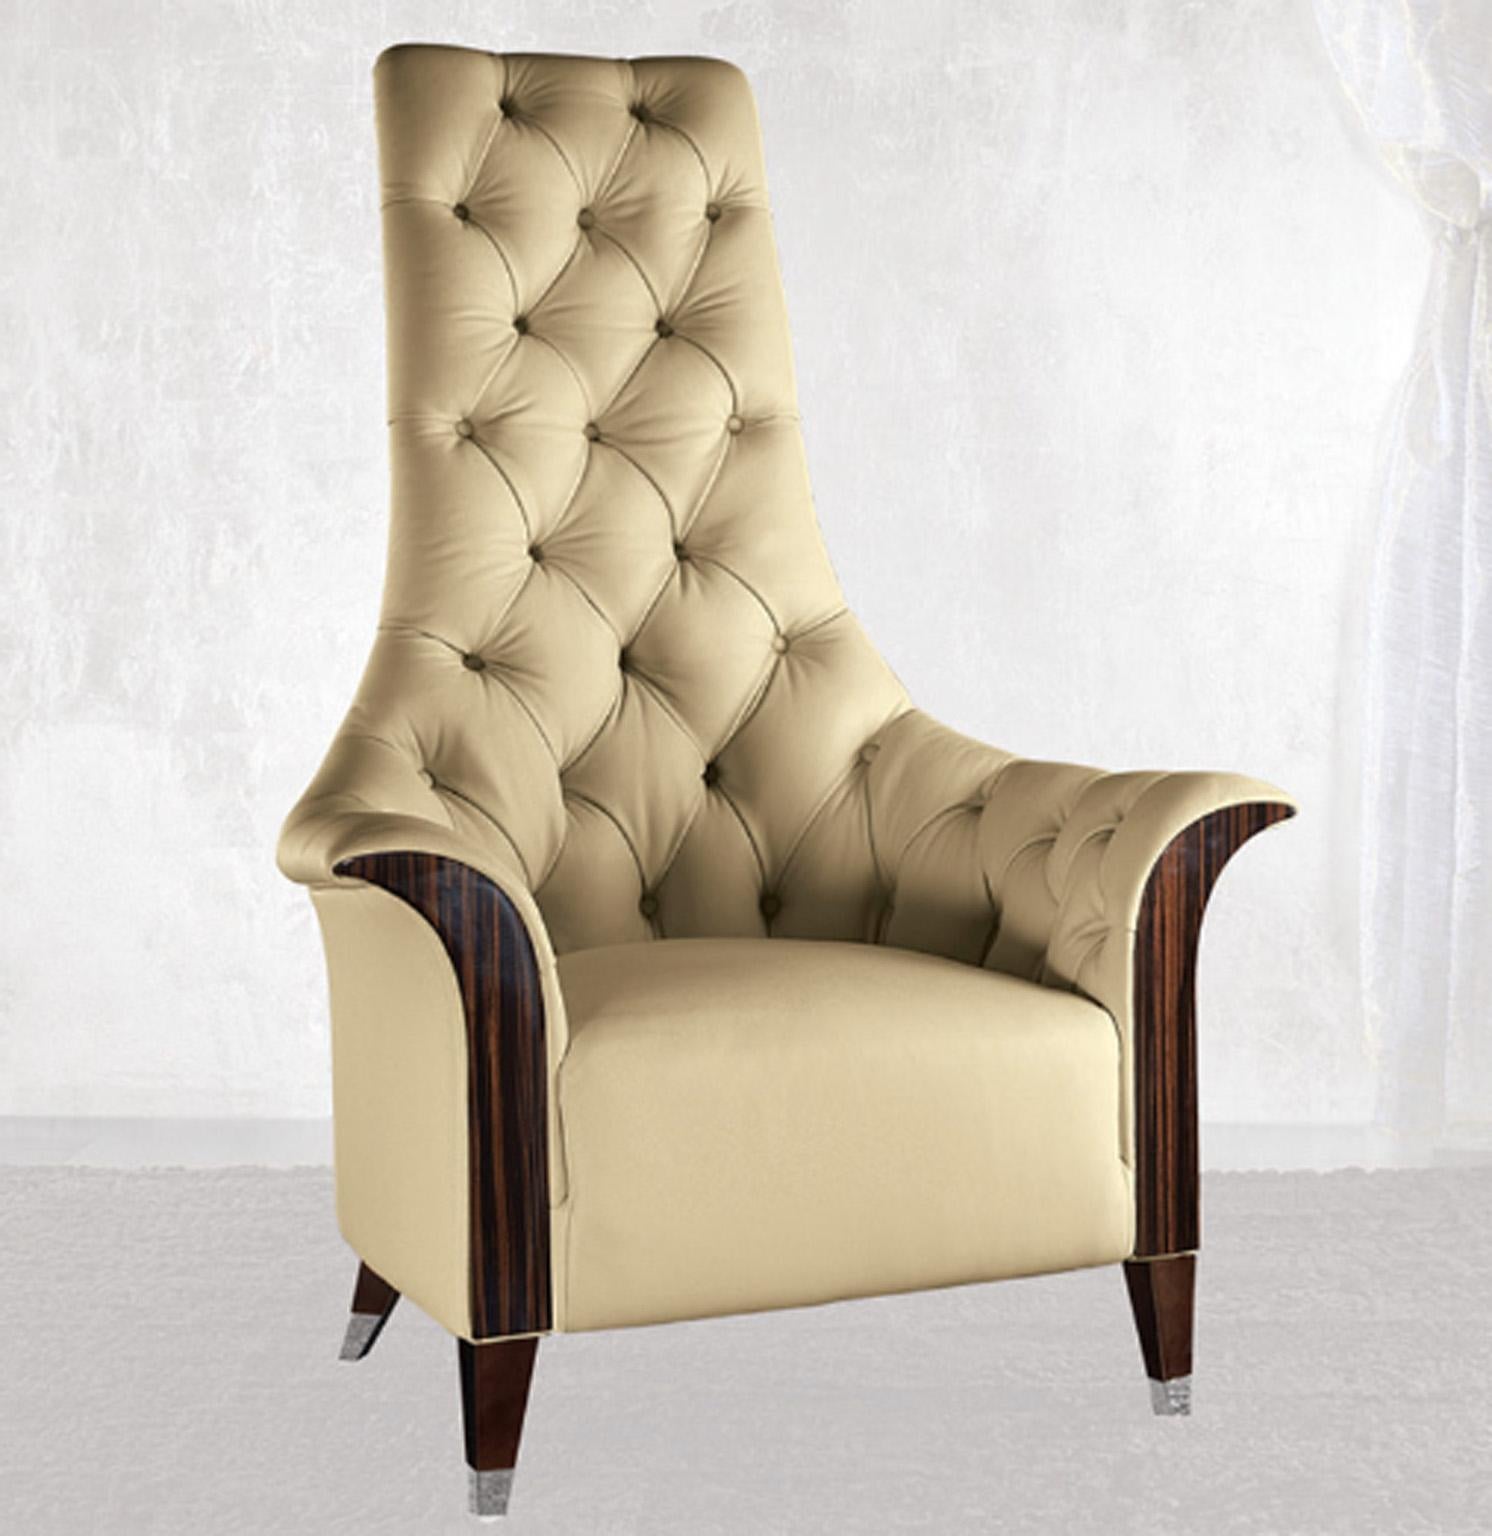 Großer Sessel mit Fronten aus Ebenholz Makassar in hochglänzendem Polyester, bezogen mit getuftetem Leder erster Güte.
Füße aus Chromstahl.

Größe: cm 92 B x 86 T x 127 H
Größe: 36